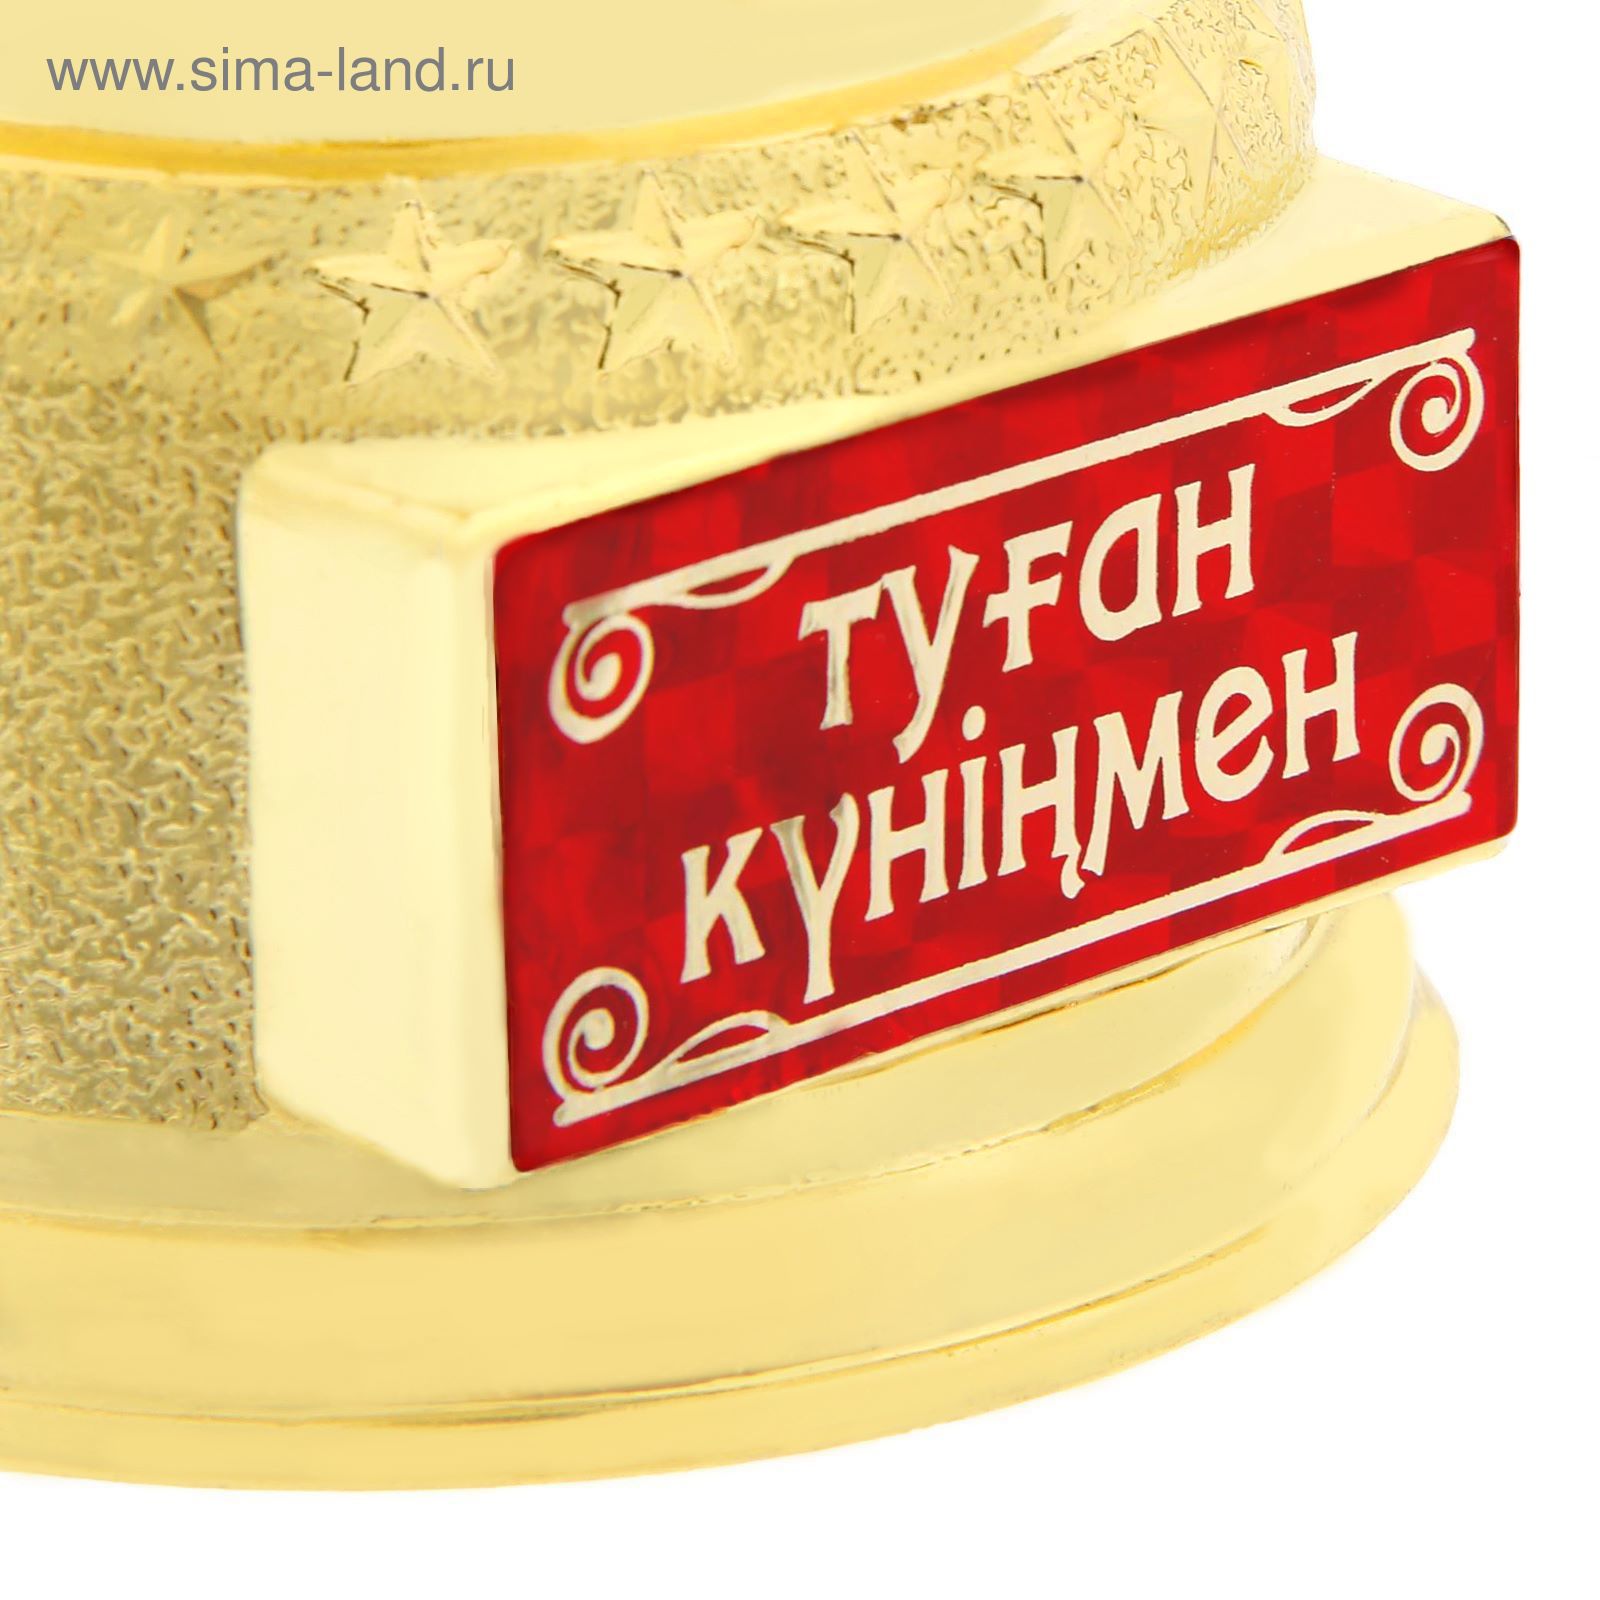 Открытка с днем рождения на казахском языке